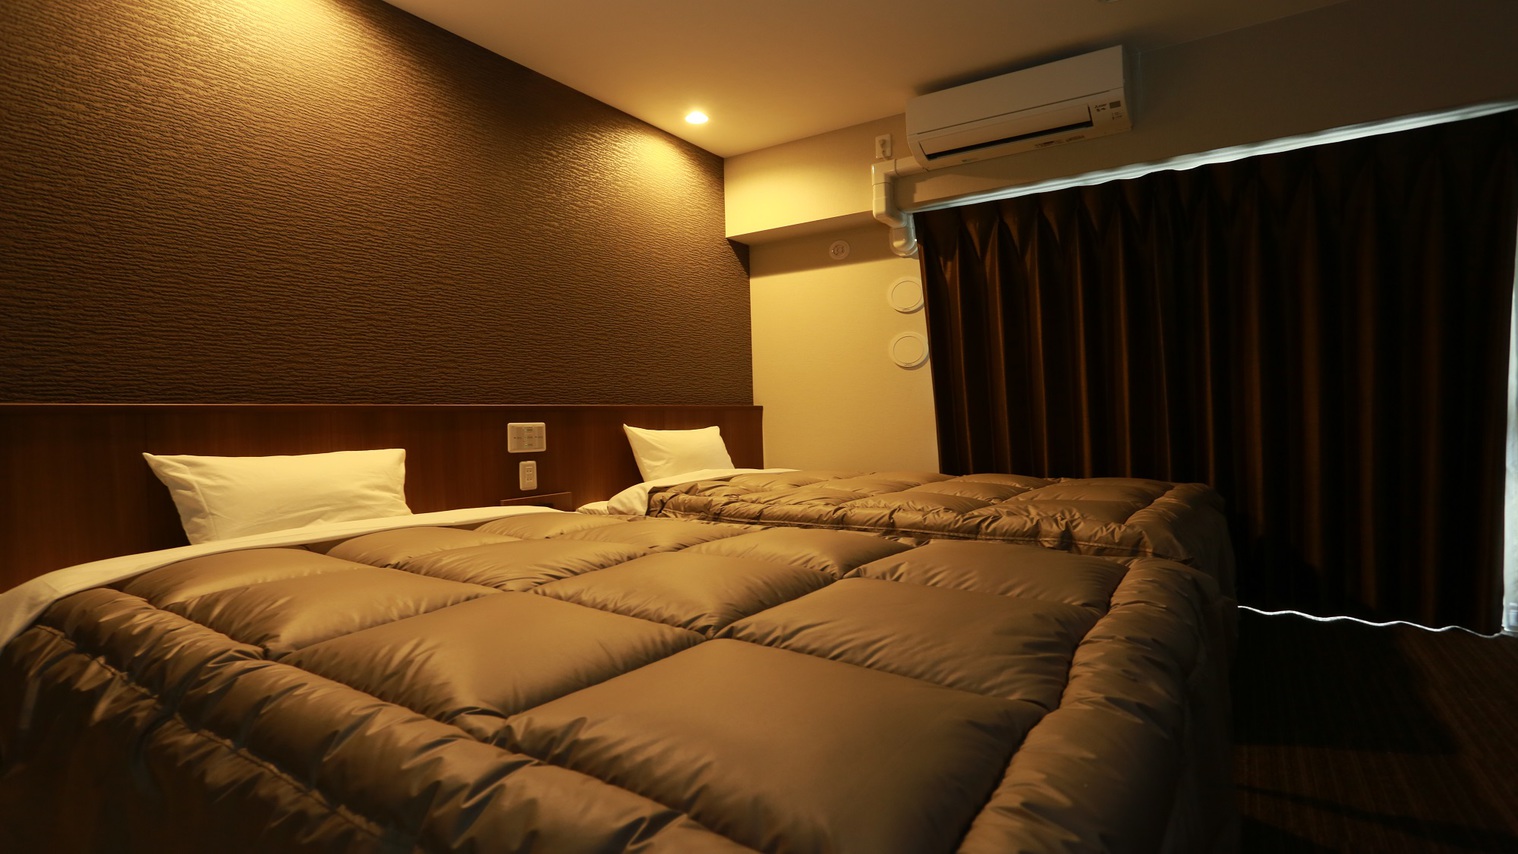  ツインルーム   幅120センチのベッドが2台あるお部屋